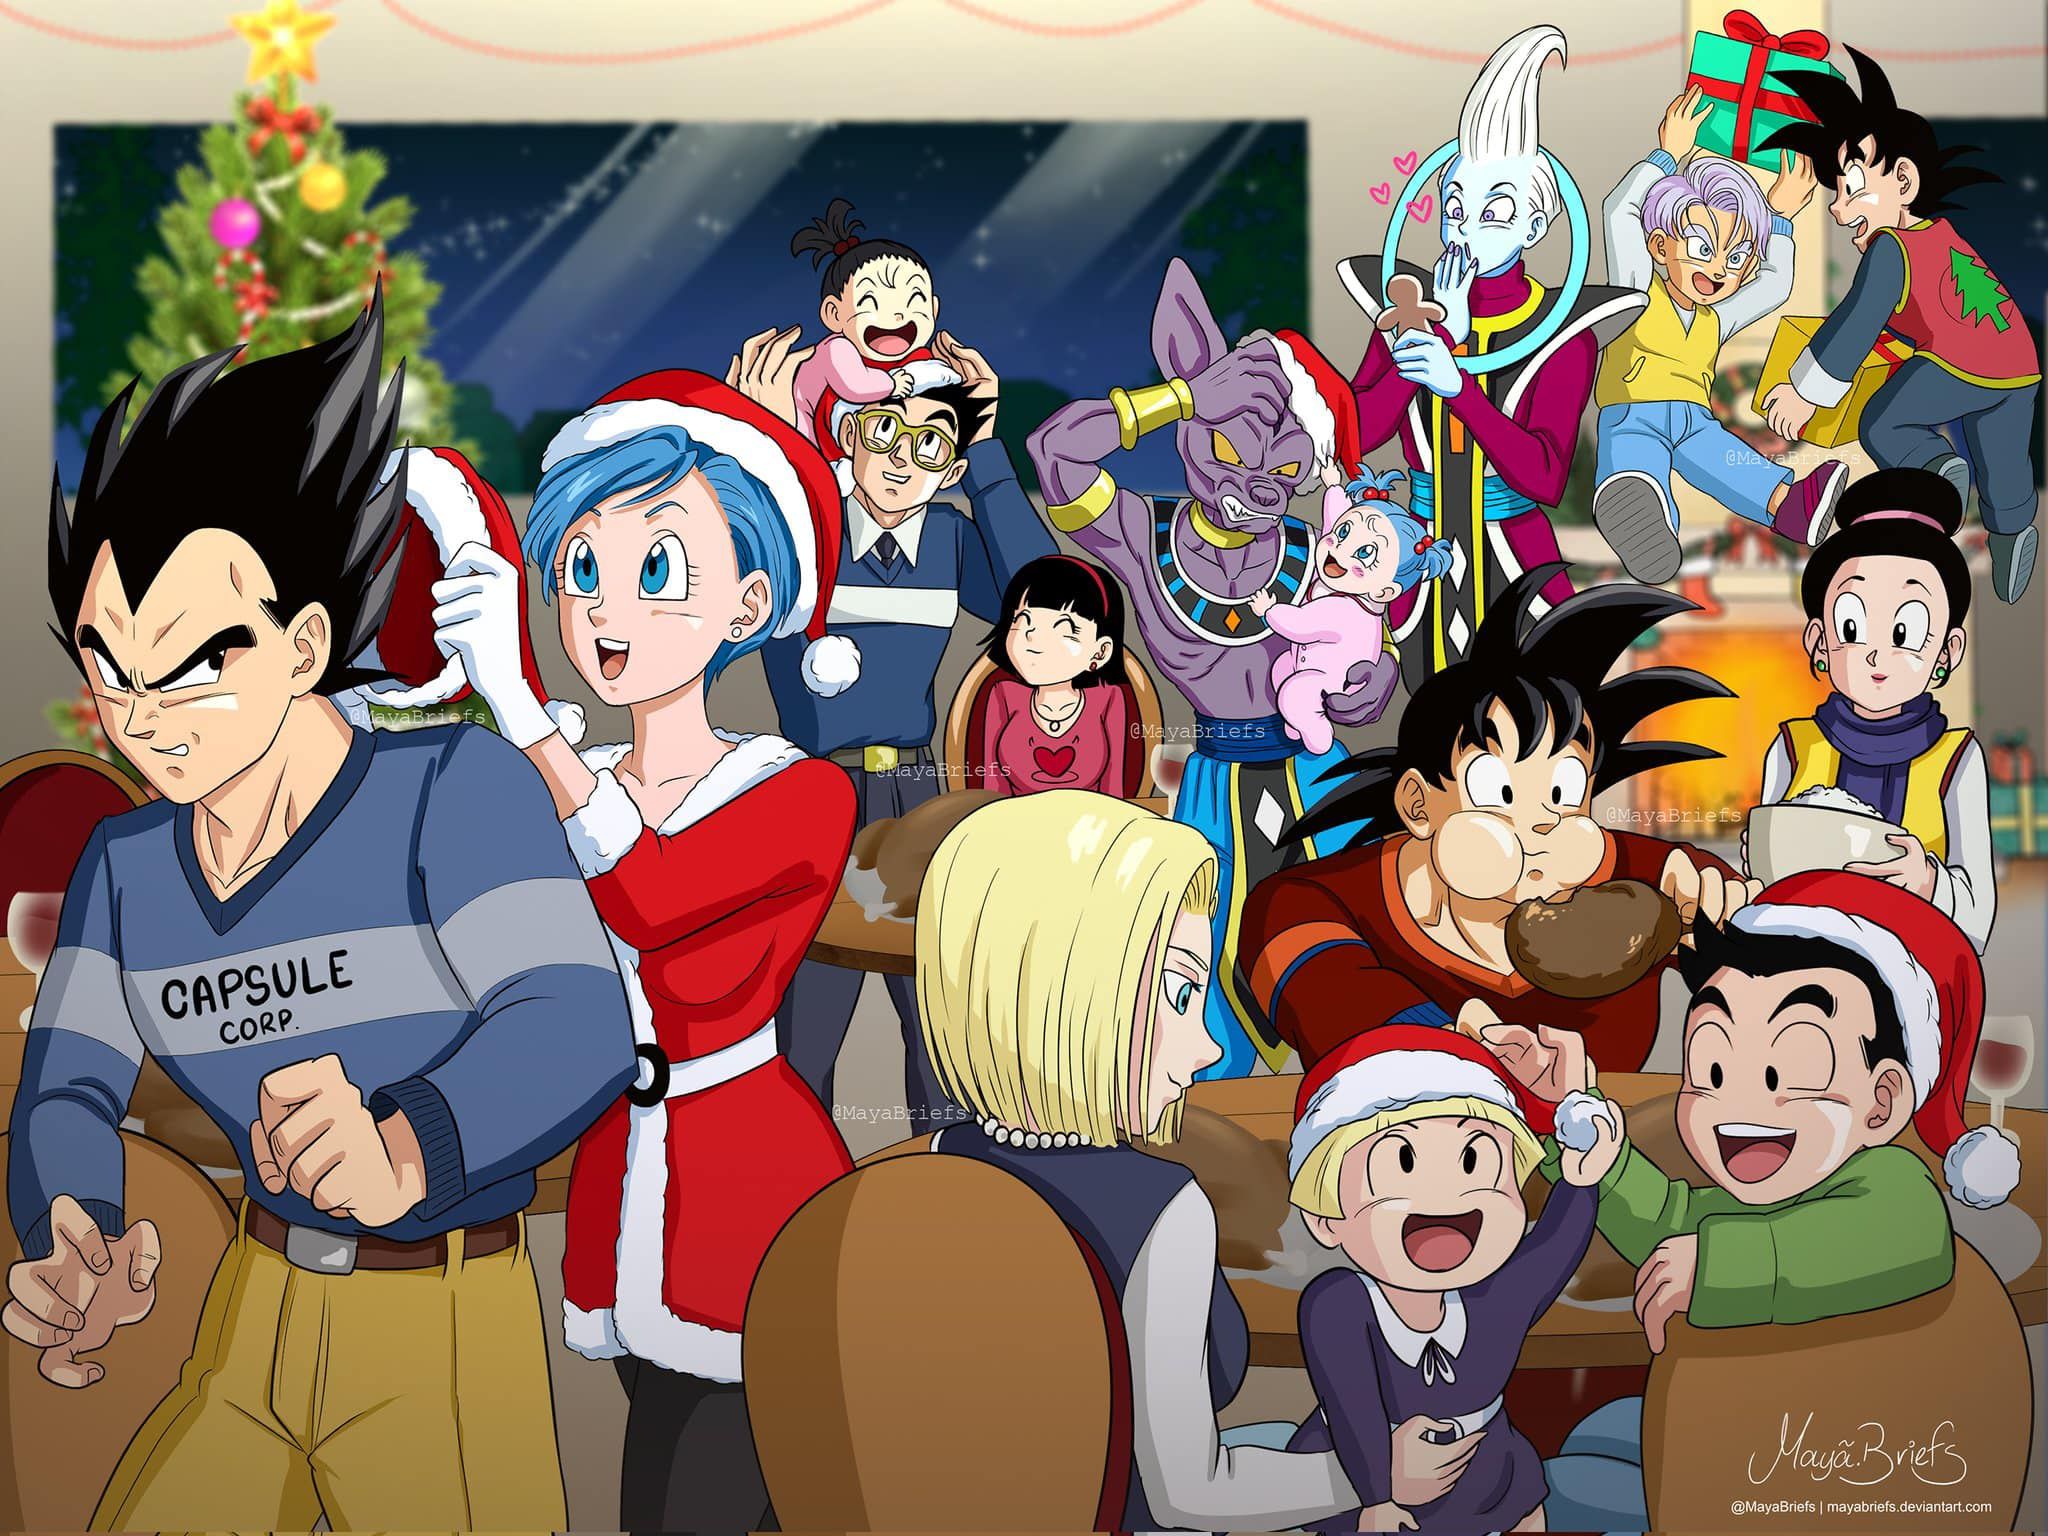 Dragon Ball Z Christmas Wallpapers